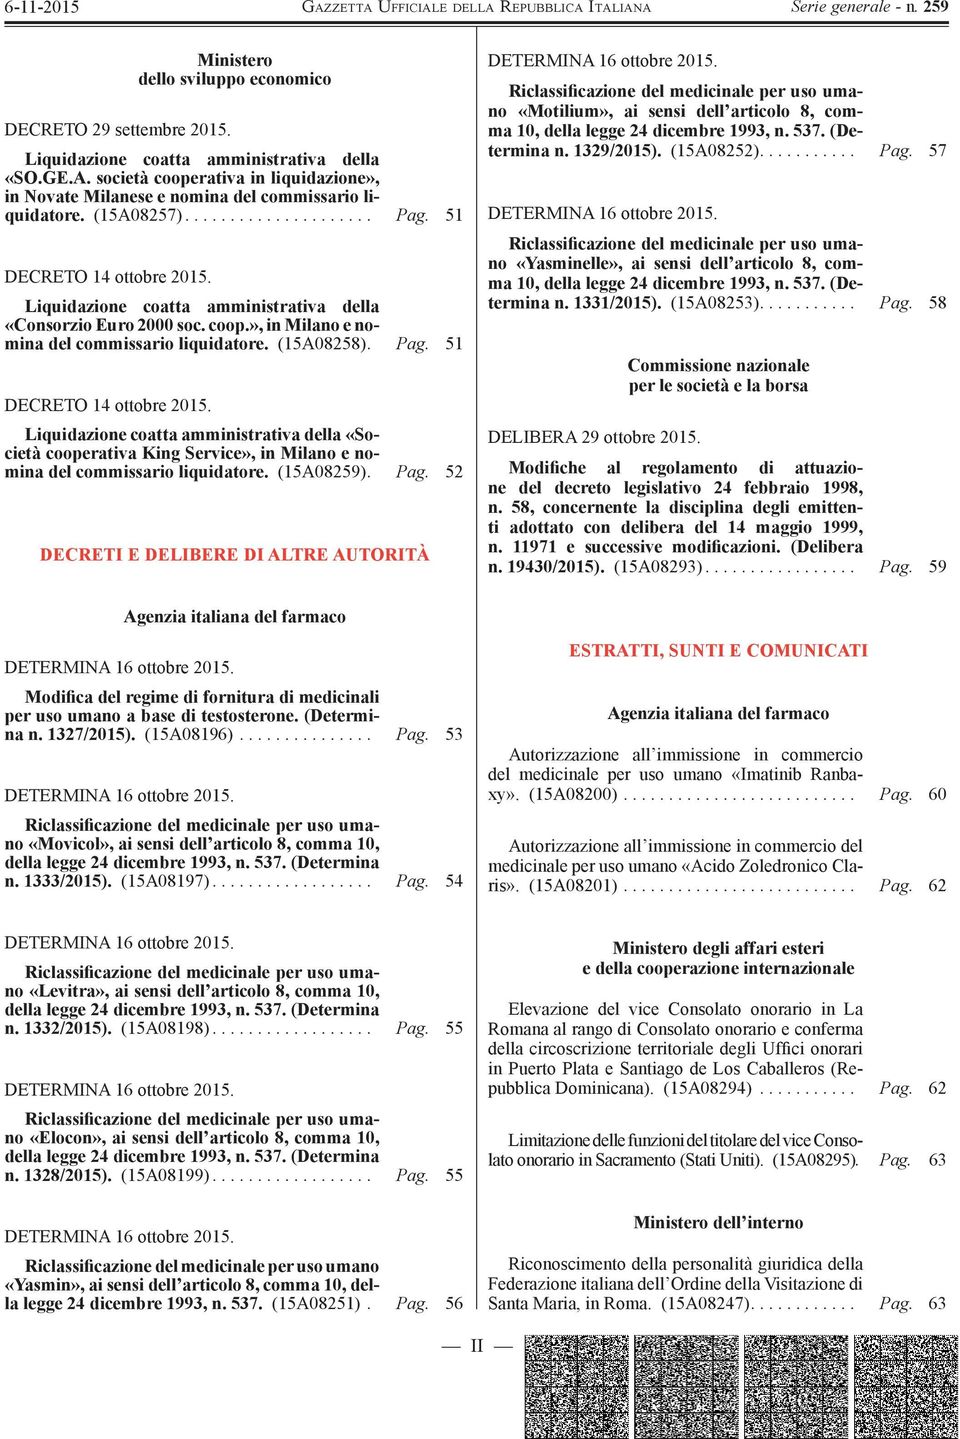 Liquidazione coatta amministrativa della «Consorzio Euro 2000 soc. coop.», in Milano e nomina del commissario liquidatore. (15A08258). Pag. 51 DECRETO 14 ottobre 2015.